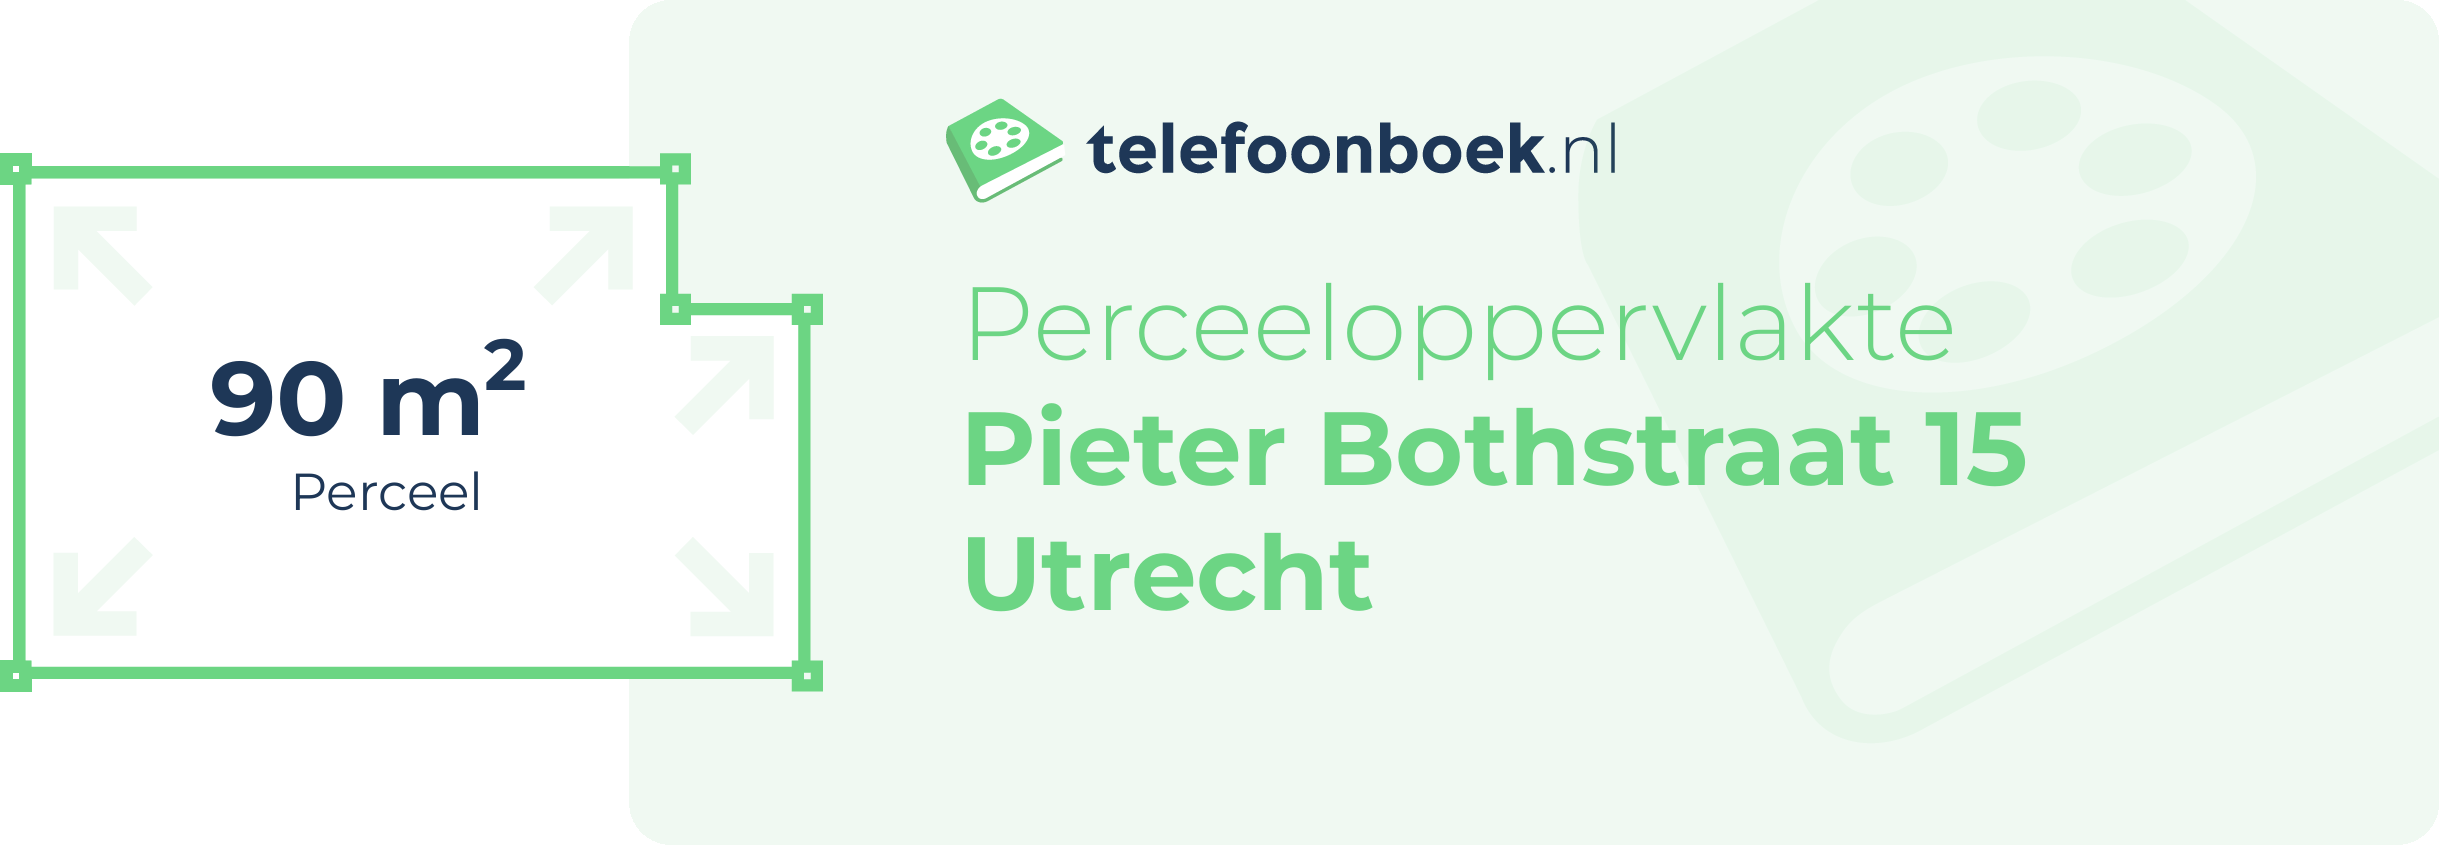 Perceeloppervlakte Pieter Bothstraat 15 Utrecht